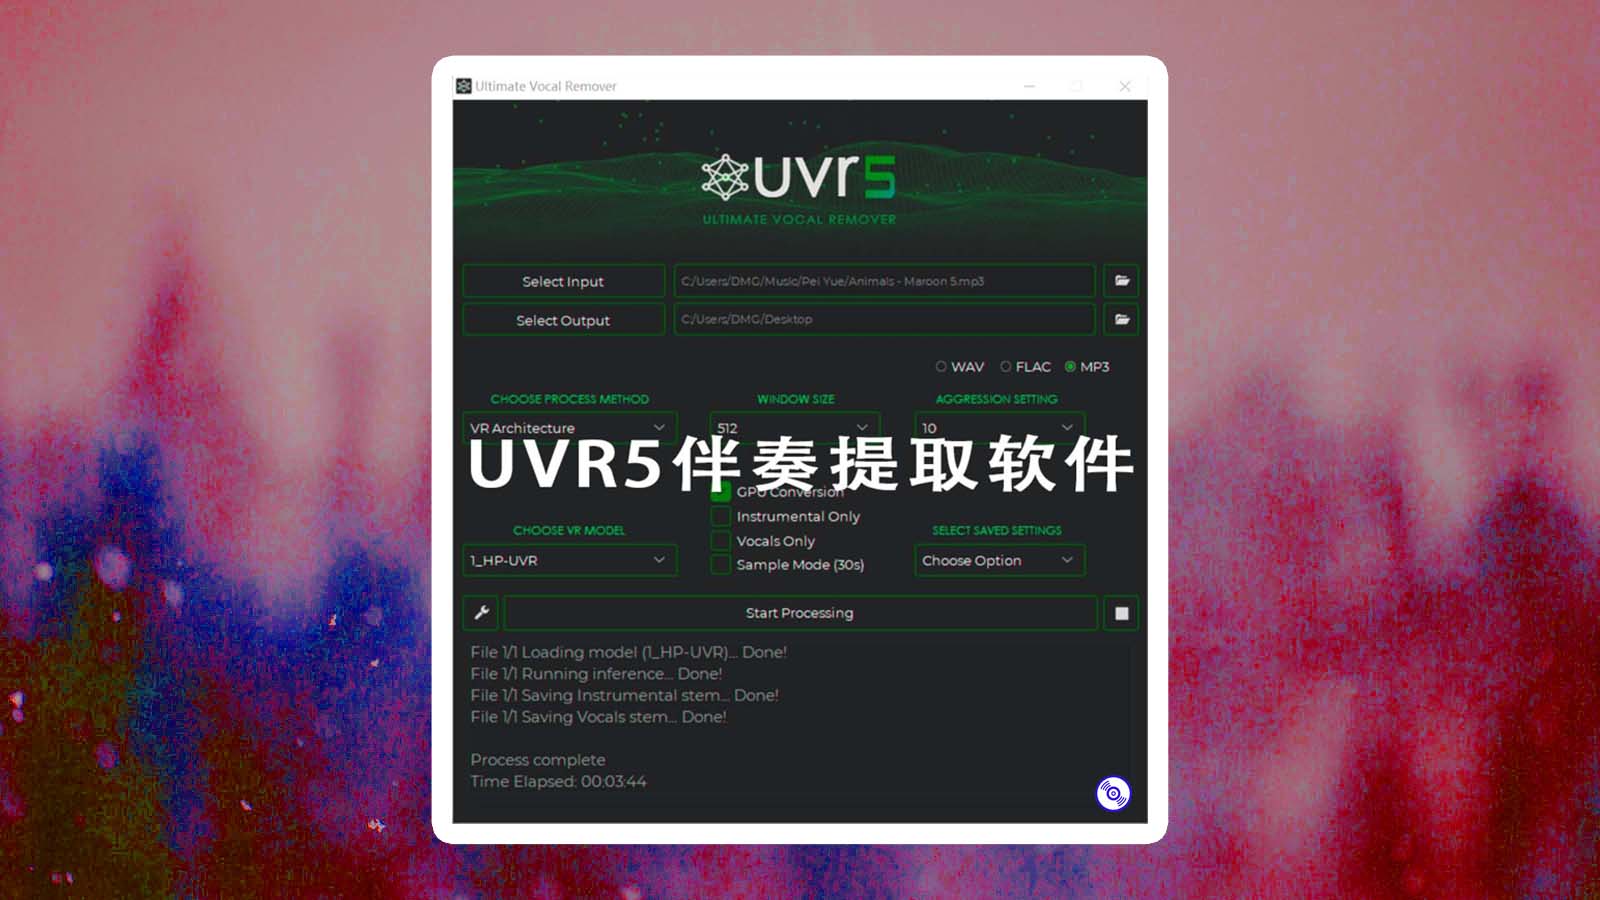 【UVR5完整功能版】UVR5人声伴奏分离提取软件最新版UVR.v5.6.0稳定完整版下载！包含所有算法36GB完整功能版！UVR5软件最新版下载！（人声伴奏乐器分离效果最佳）